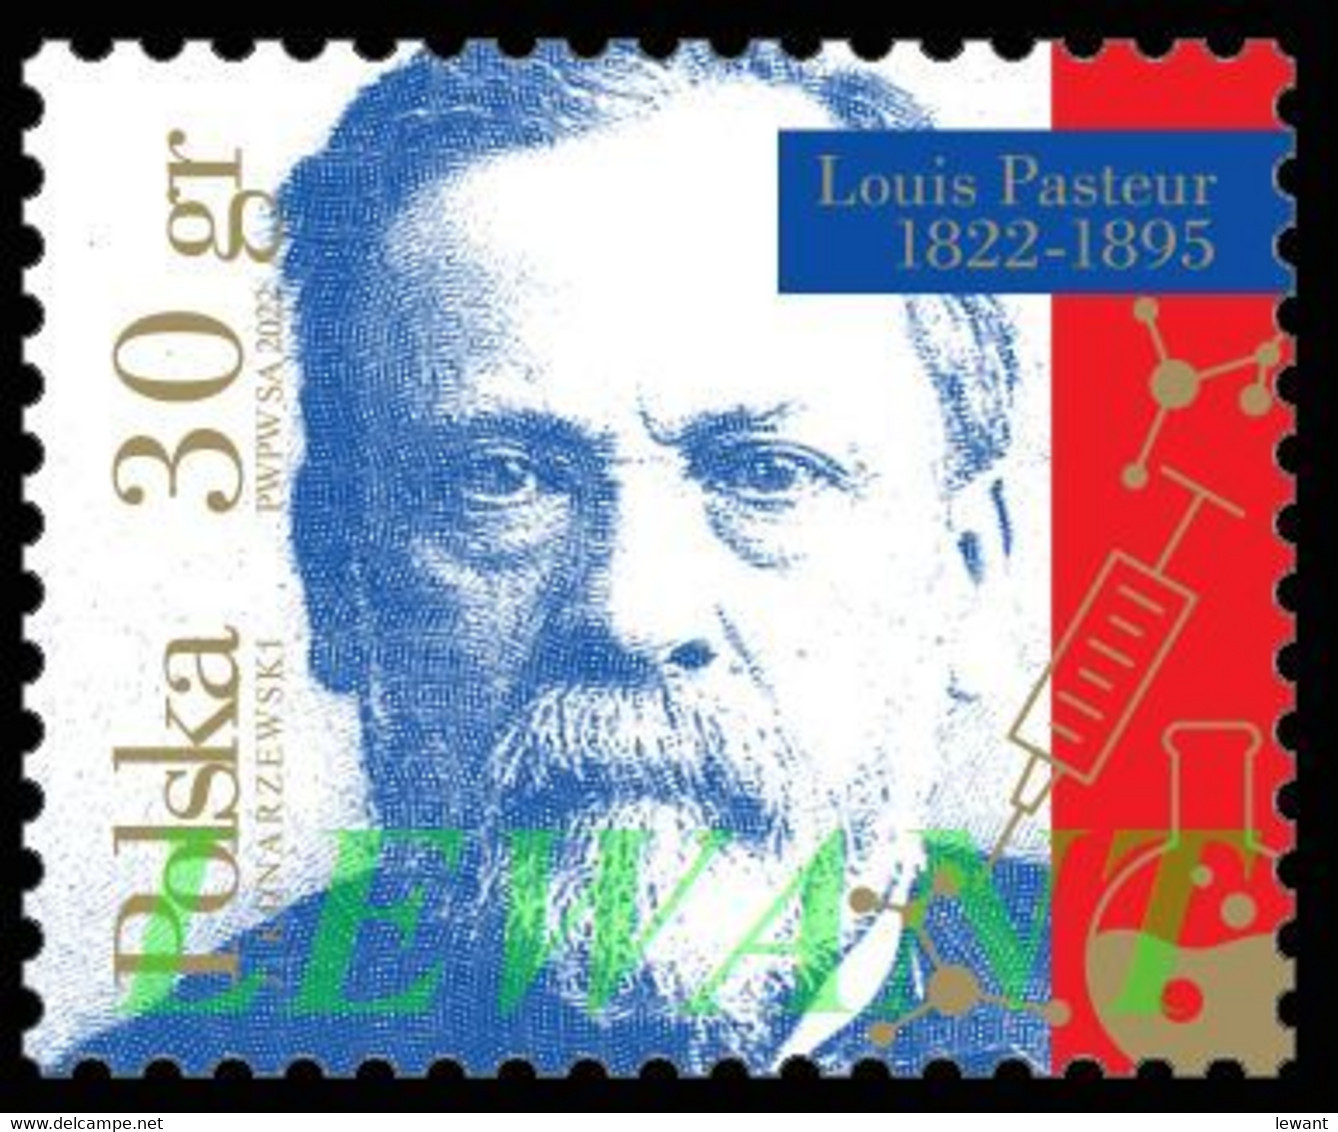 2022.03.07. Louis Pasteur 1822-1895 - MNH - Louis Pasteur